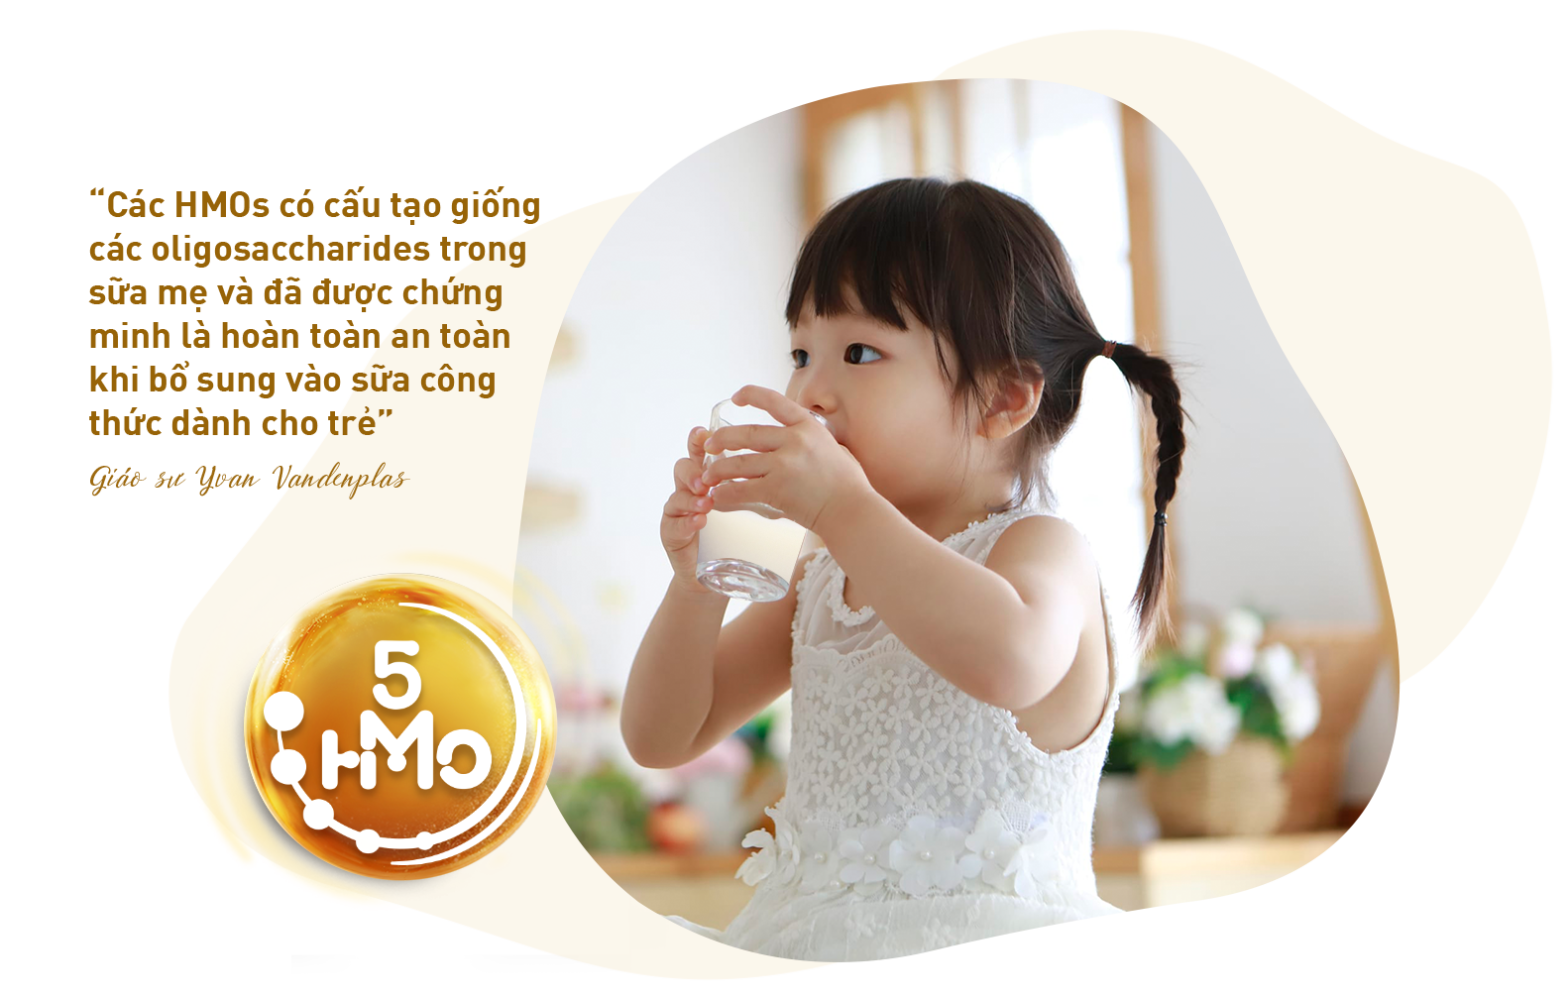 HMO là một trong các đại dưỡng chất có trong sữa mẹ